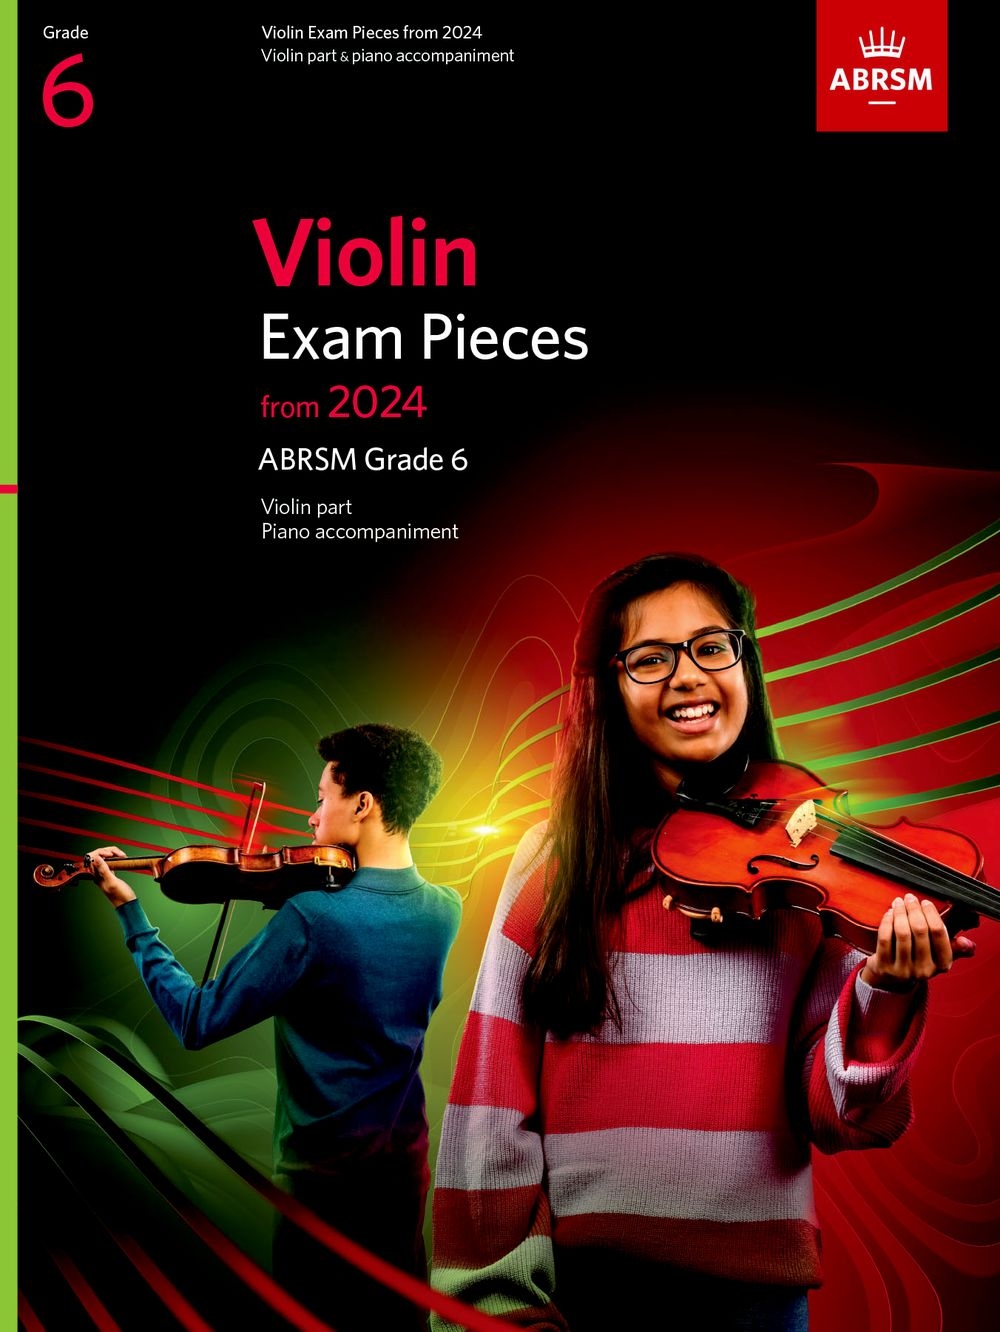 Violin Exam Pieces from 2024, ABRSM Grade 6